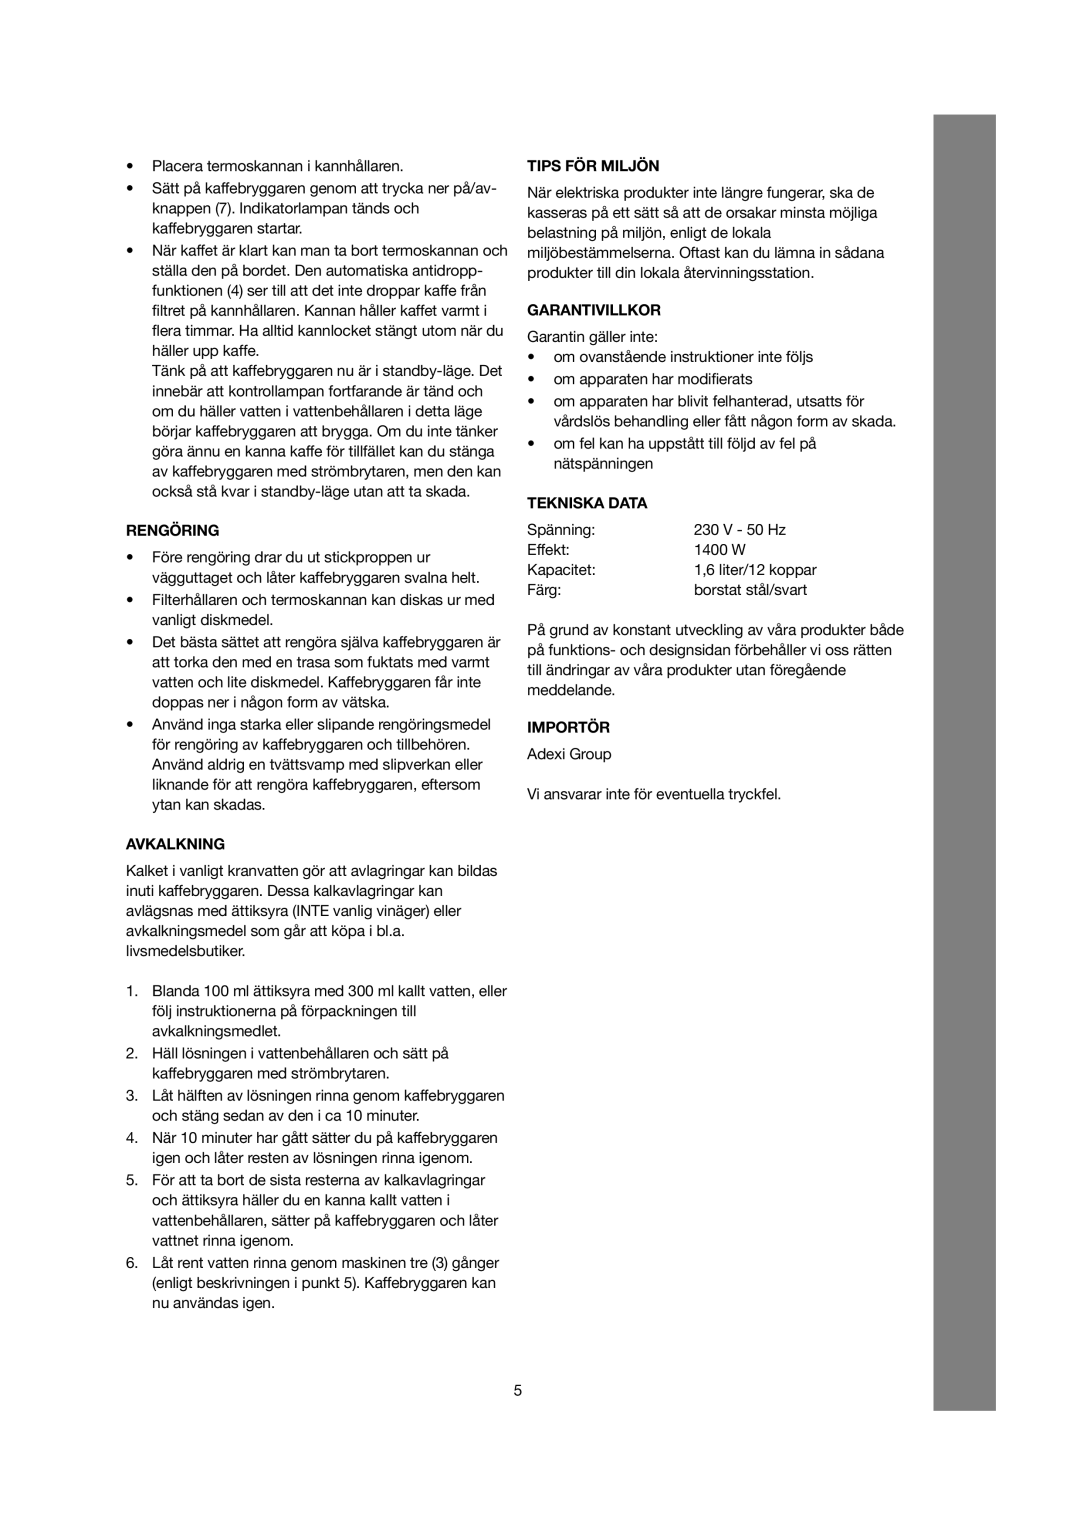 Melissa 245-030/040 manual Rengöring, Avkalkning, Tips För Miljön, Garantivillkor, Tekniska Data, Importör 